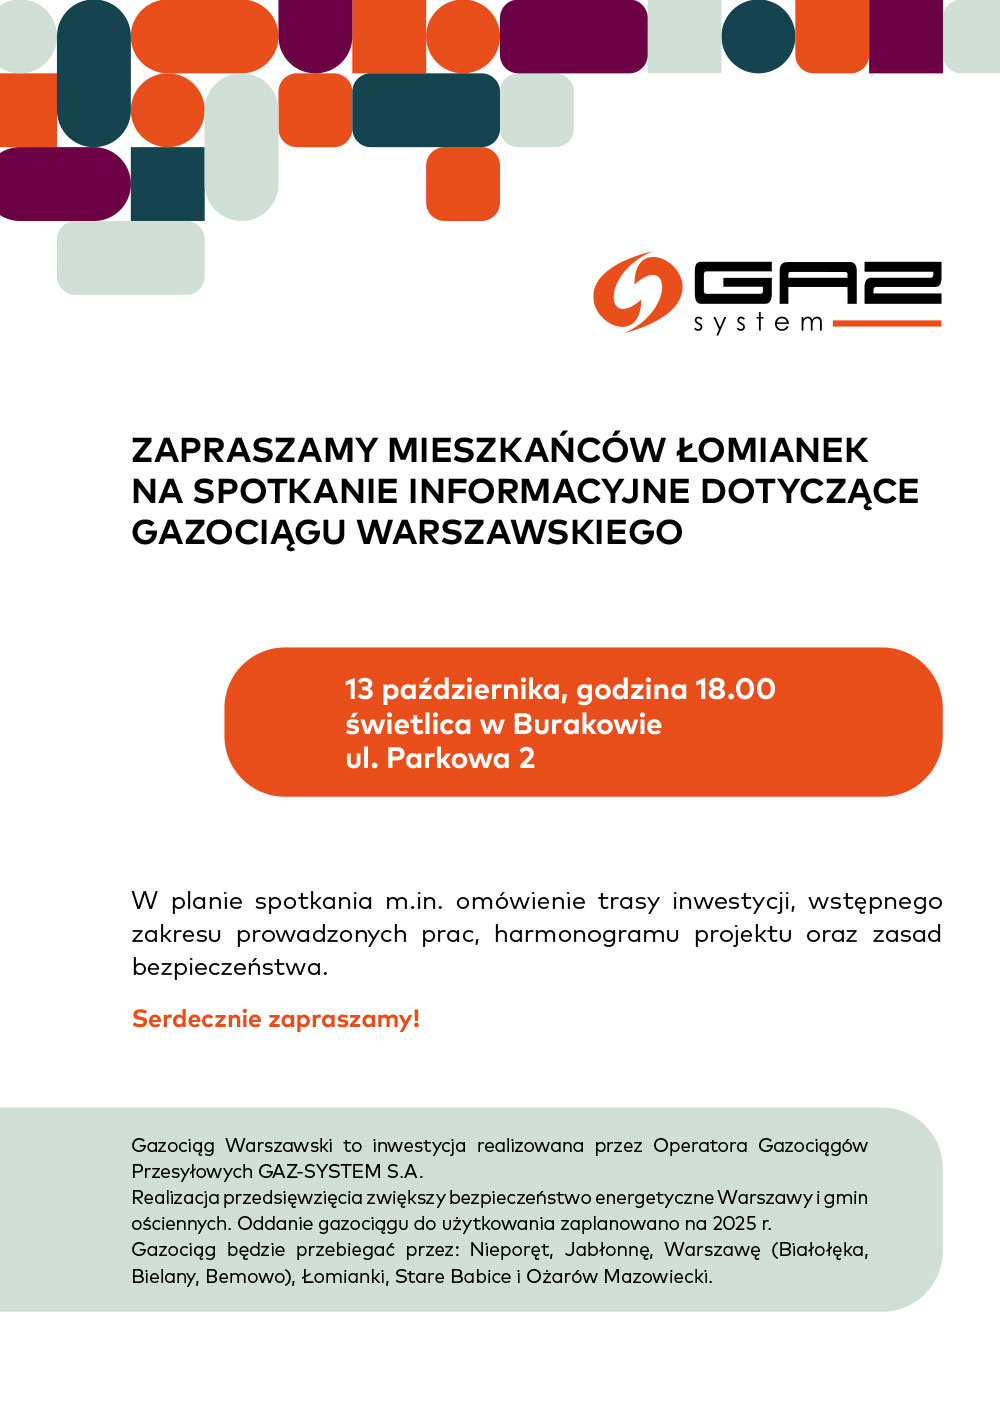 Gazociąg Warszawski – bezpieczeństwo dostaw ciepła i prądu dla mieszkańców